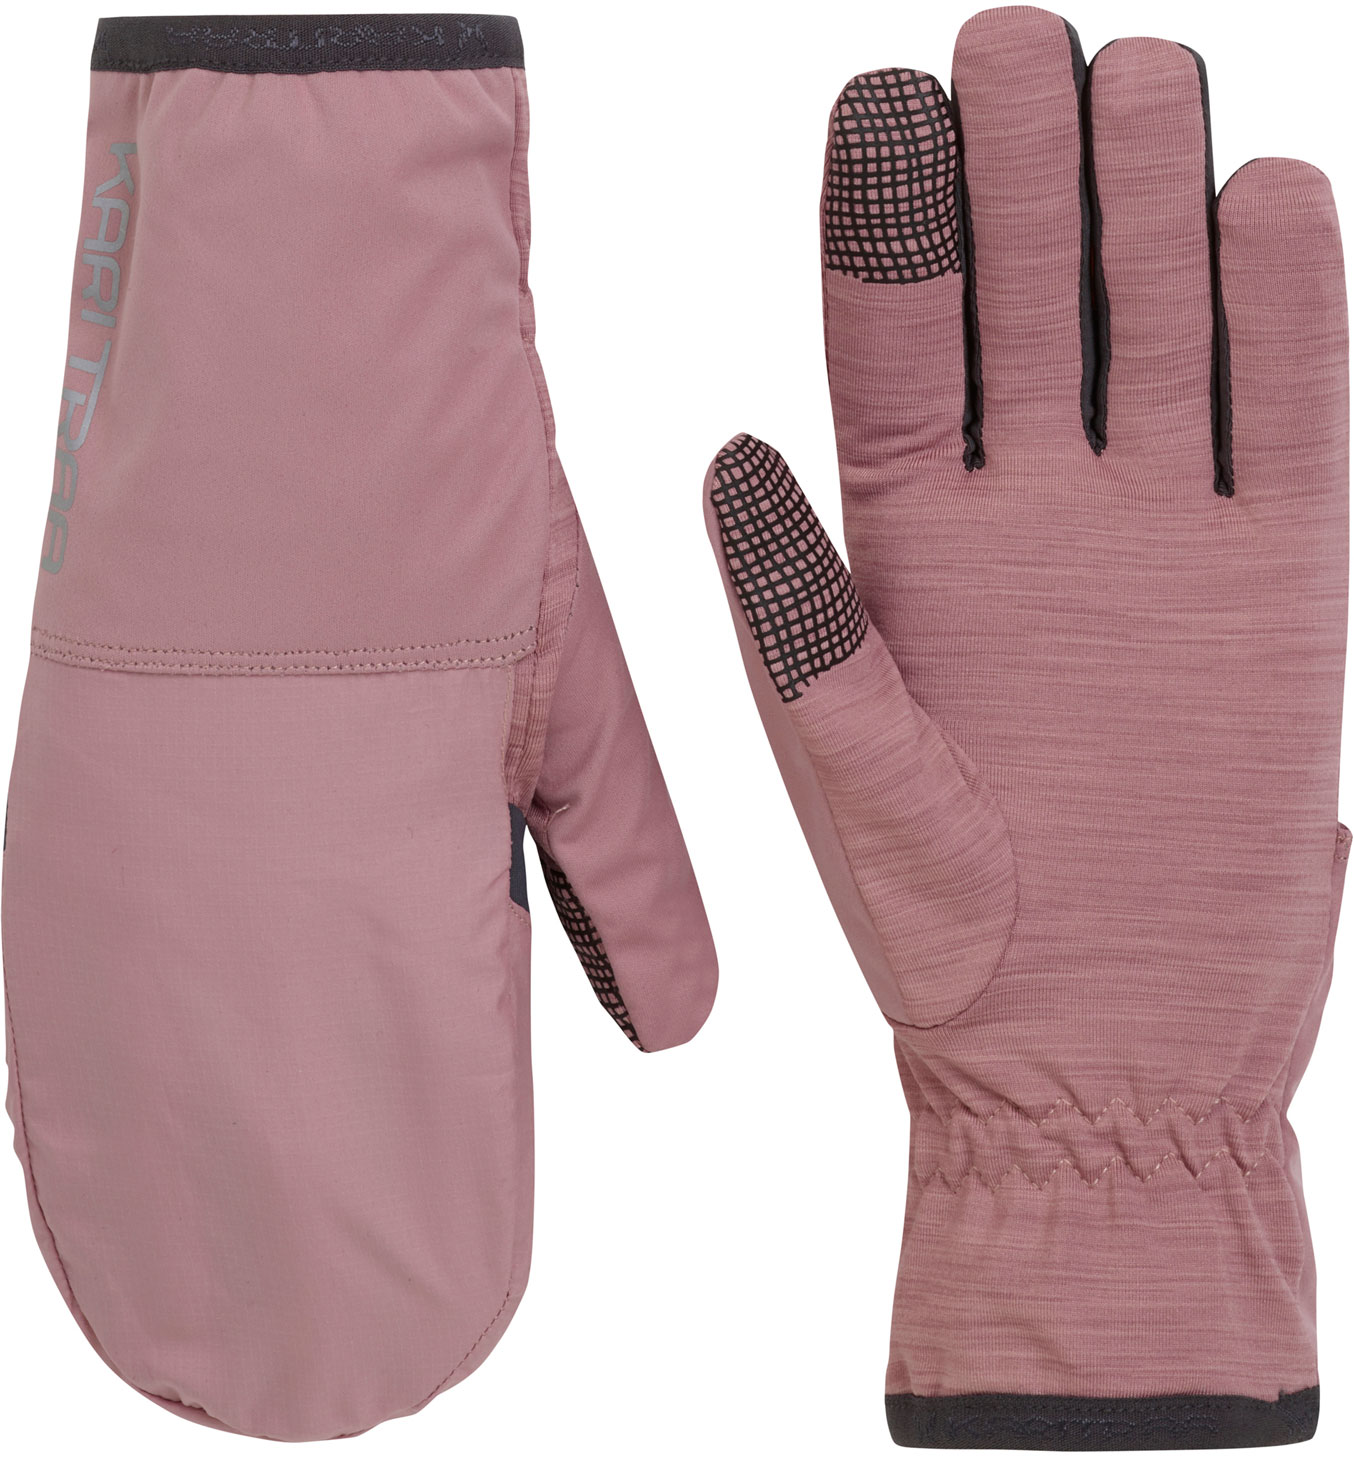 Women's gloves 2in1